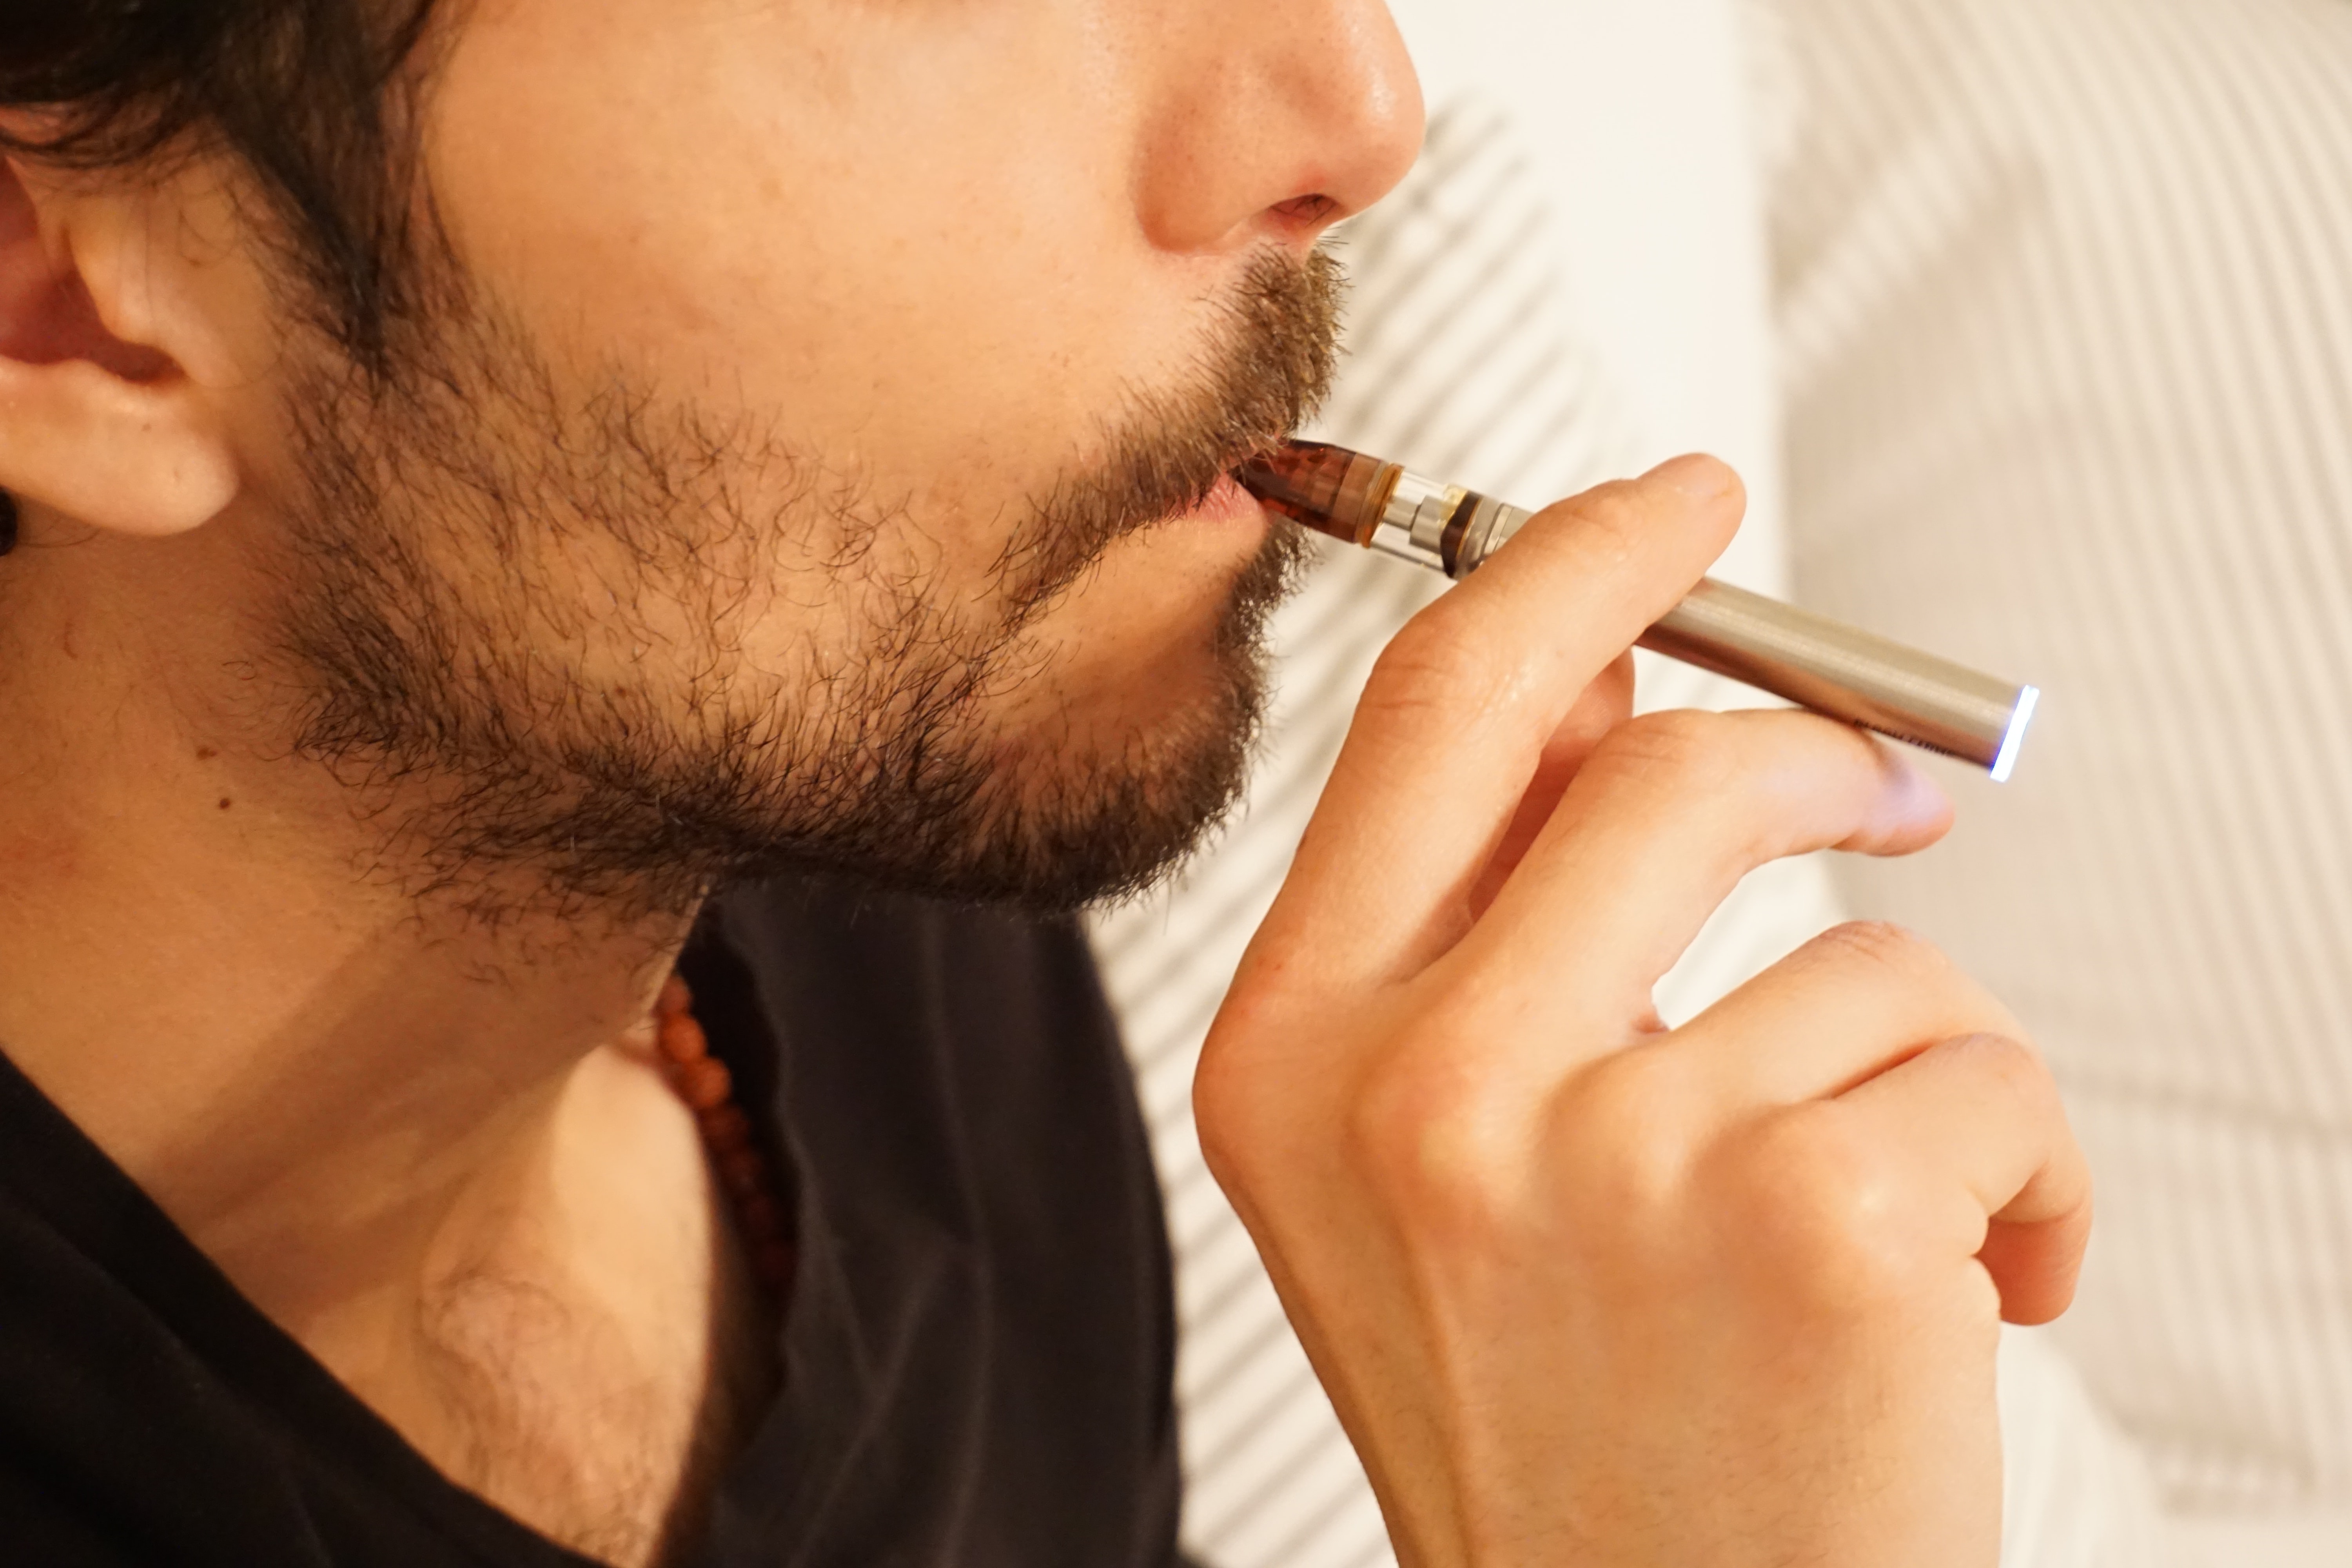 Qu'est-ce qui est le plus nocif, l'e-cigarette ou la cigarette ?